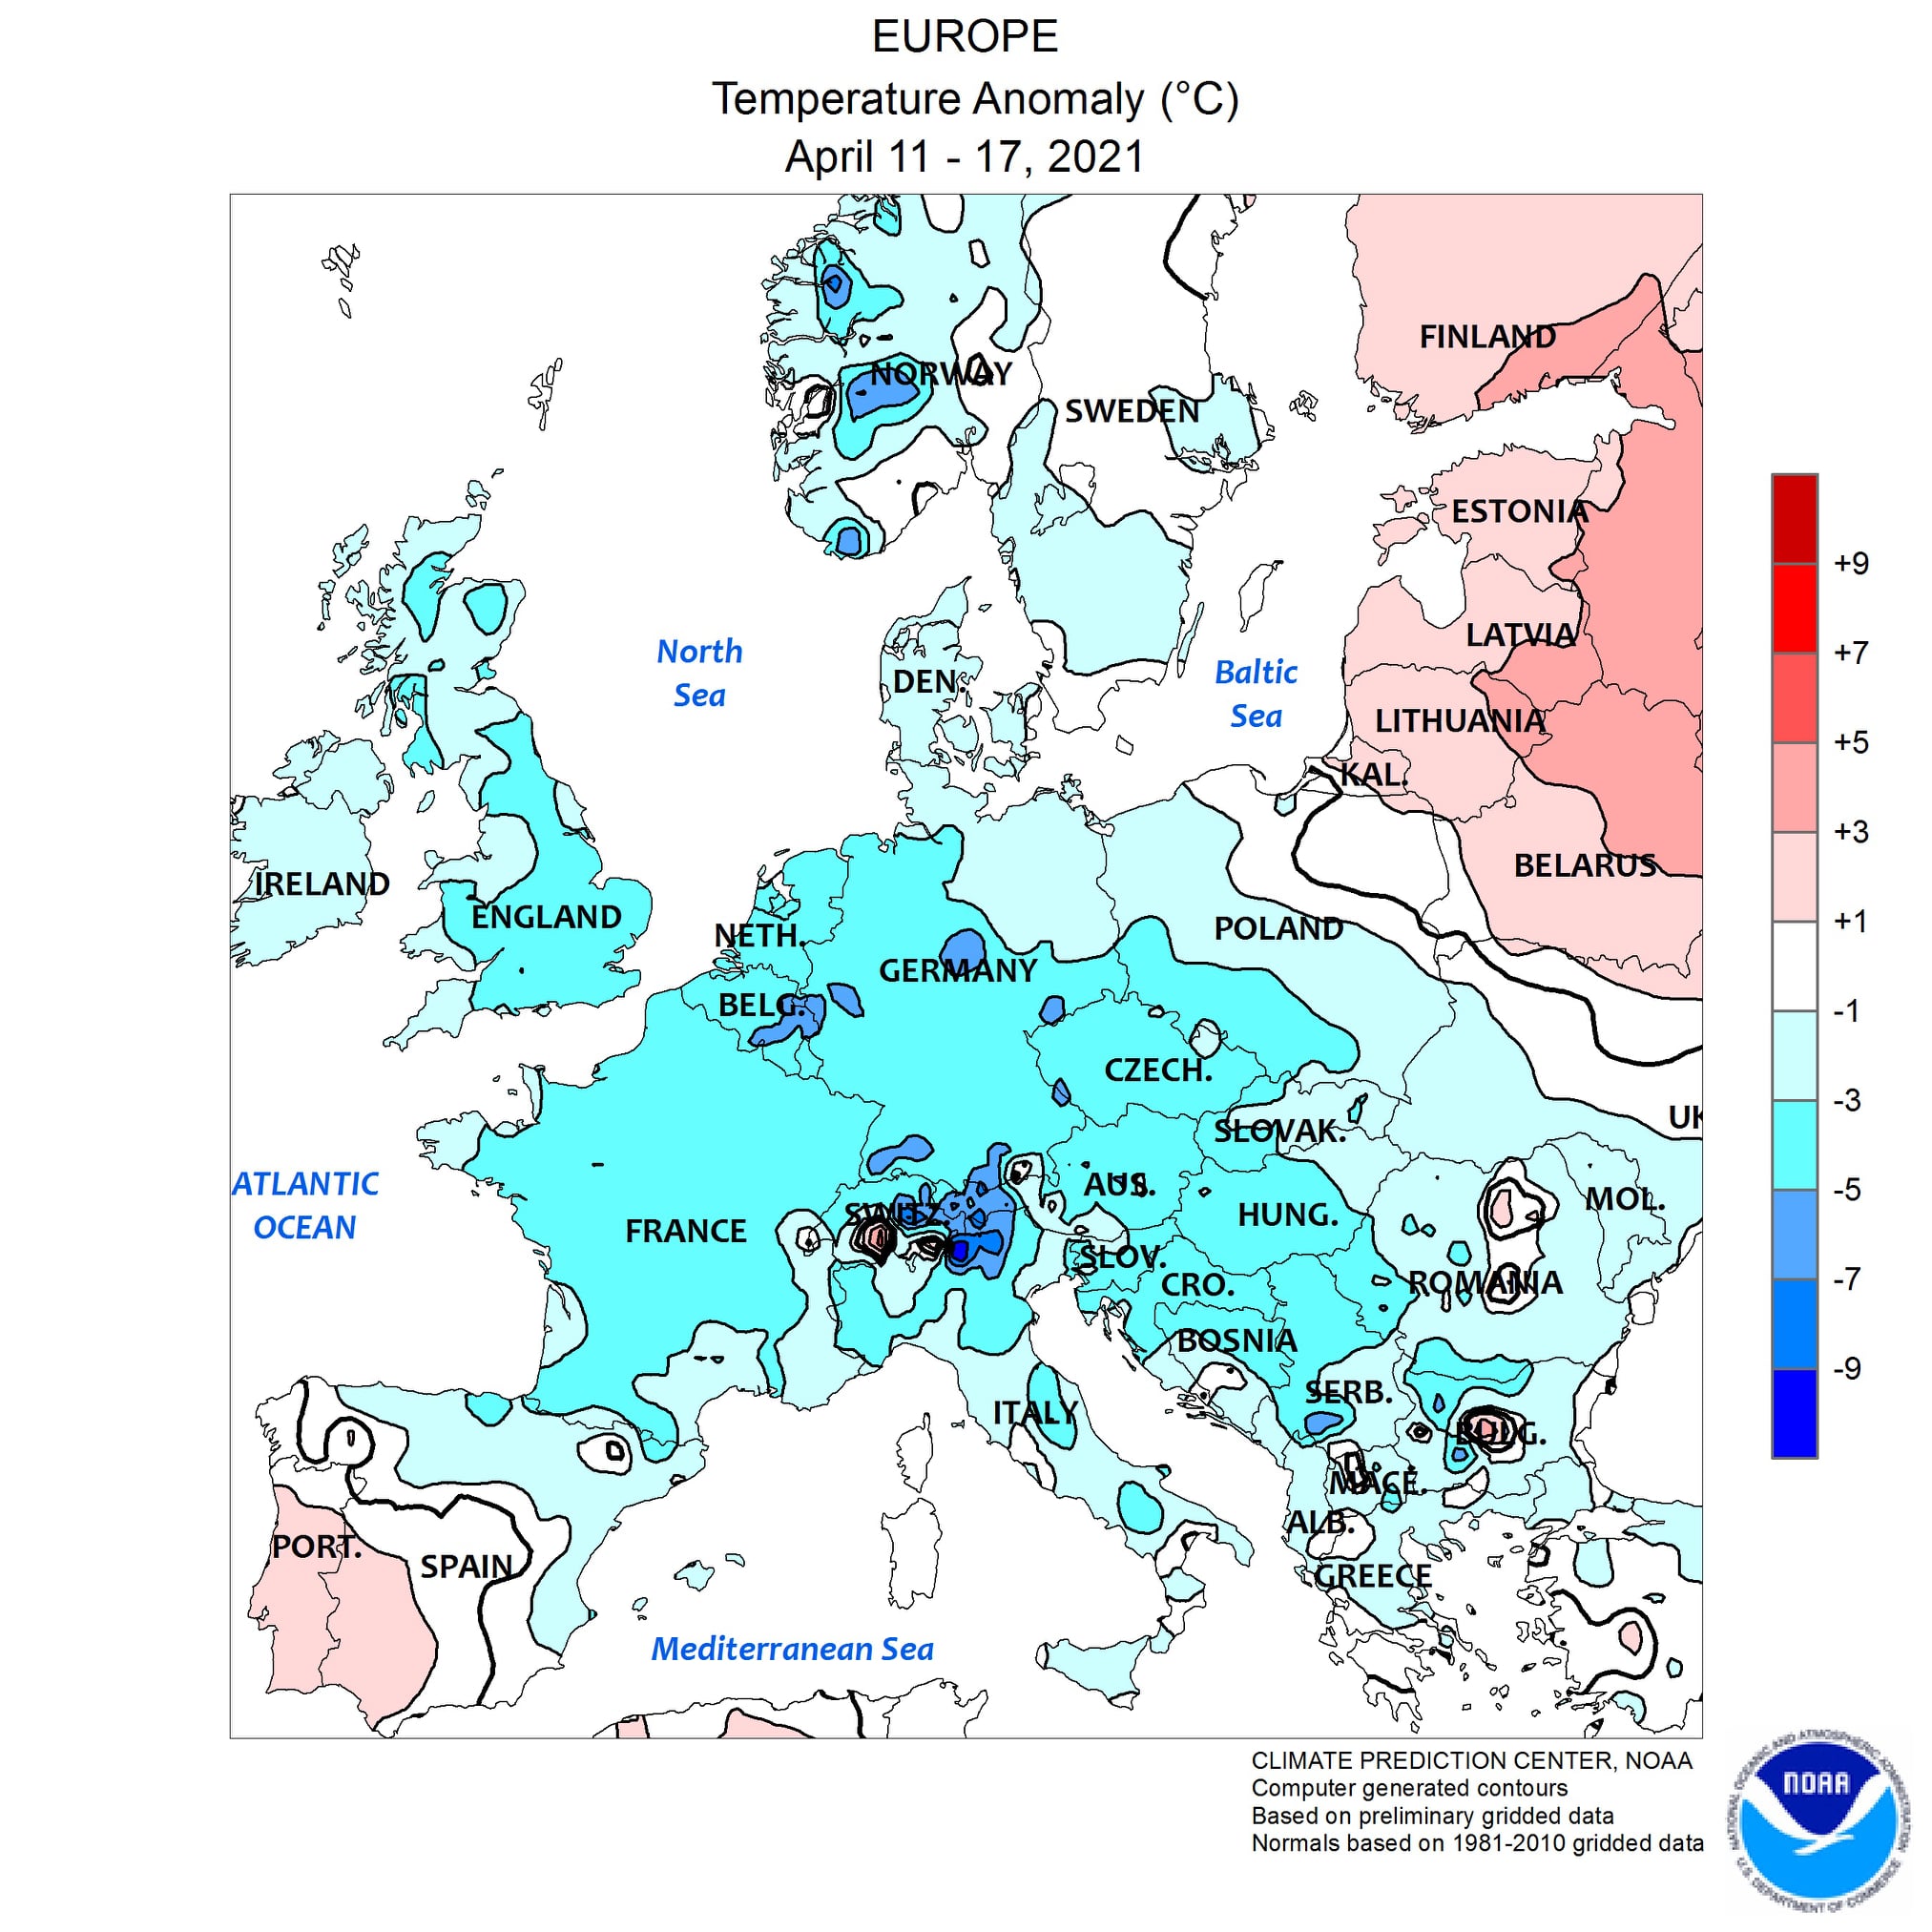 Figura 1. Anomalia della temperatura in Europa dal 11 al 17 aprile 2021 (Fonte: Climate Prediction Center NOAA)